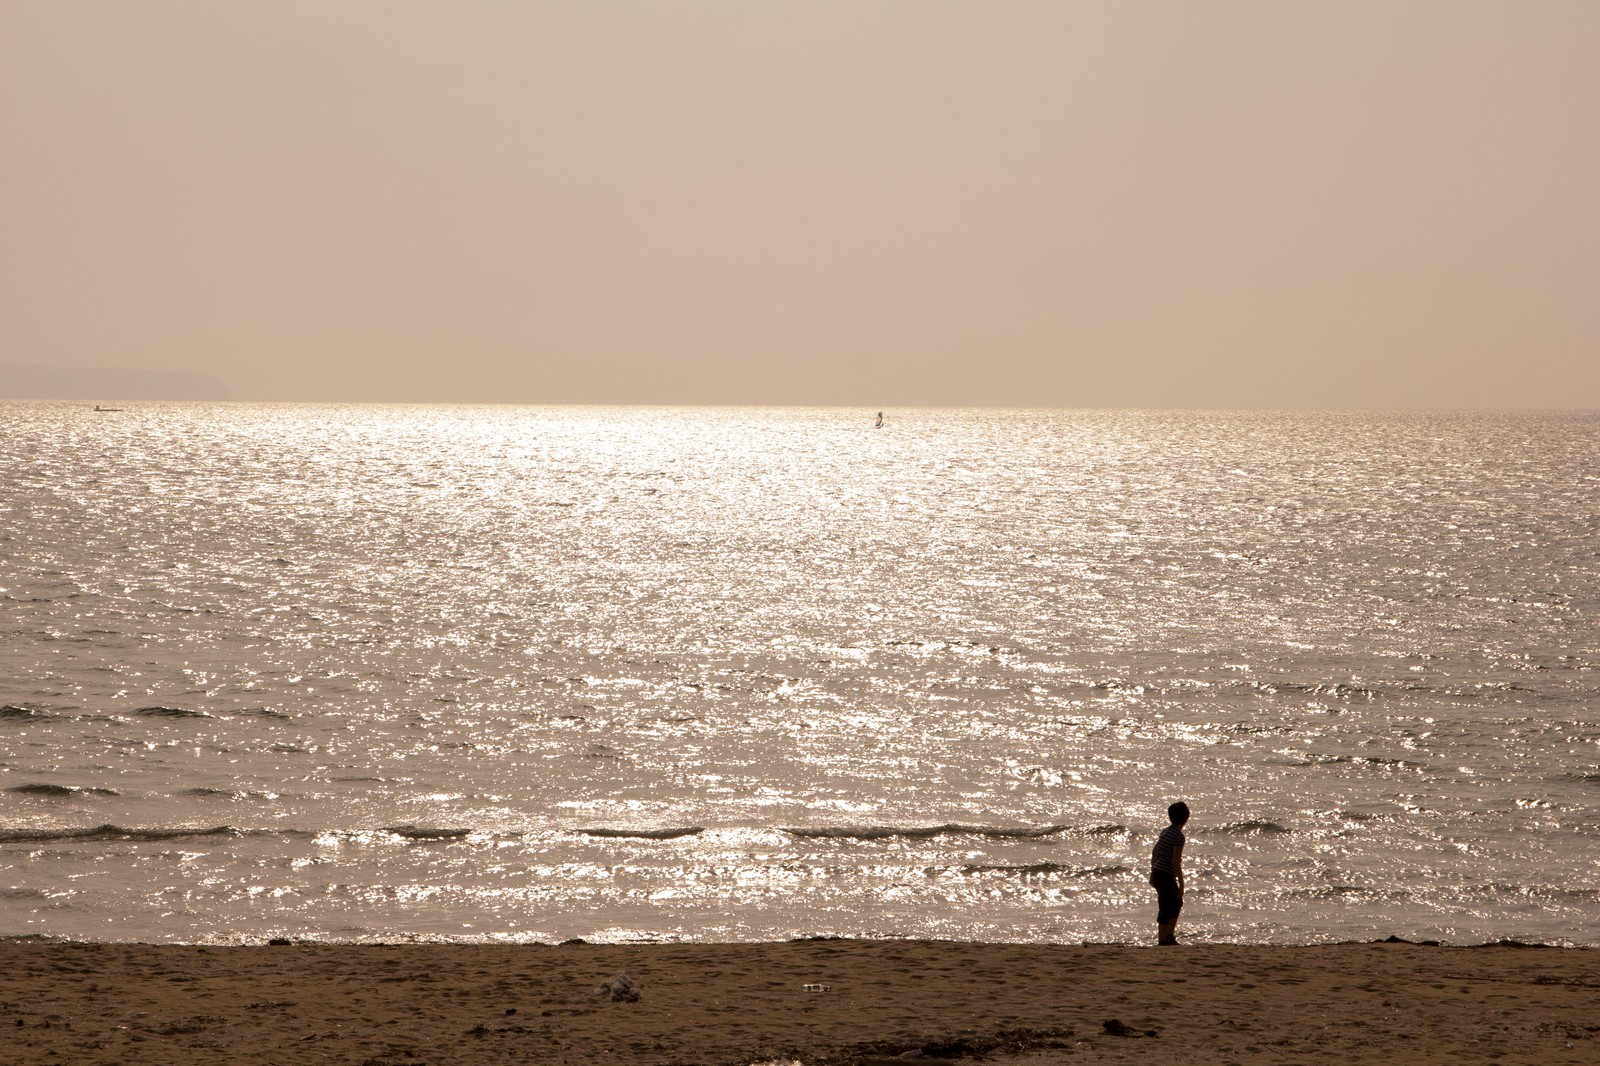 ひとり孤独に海辺に立っている少年と、海。